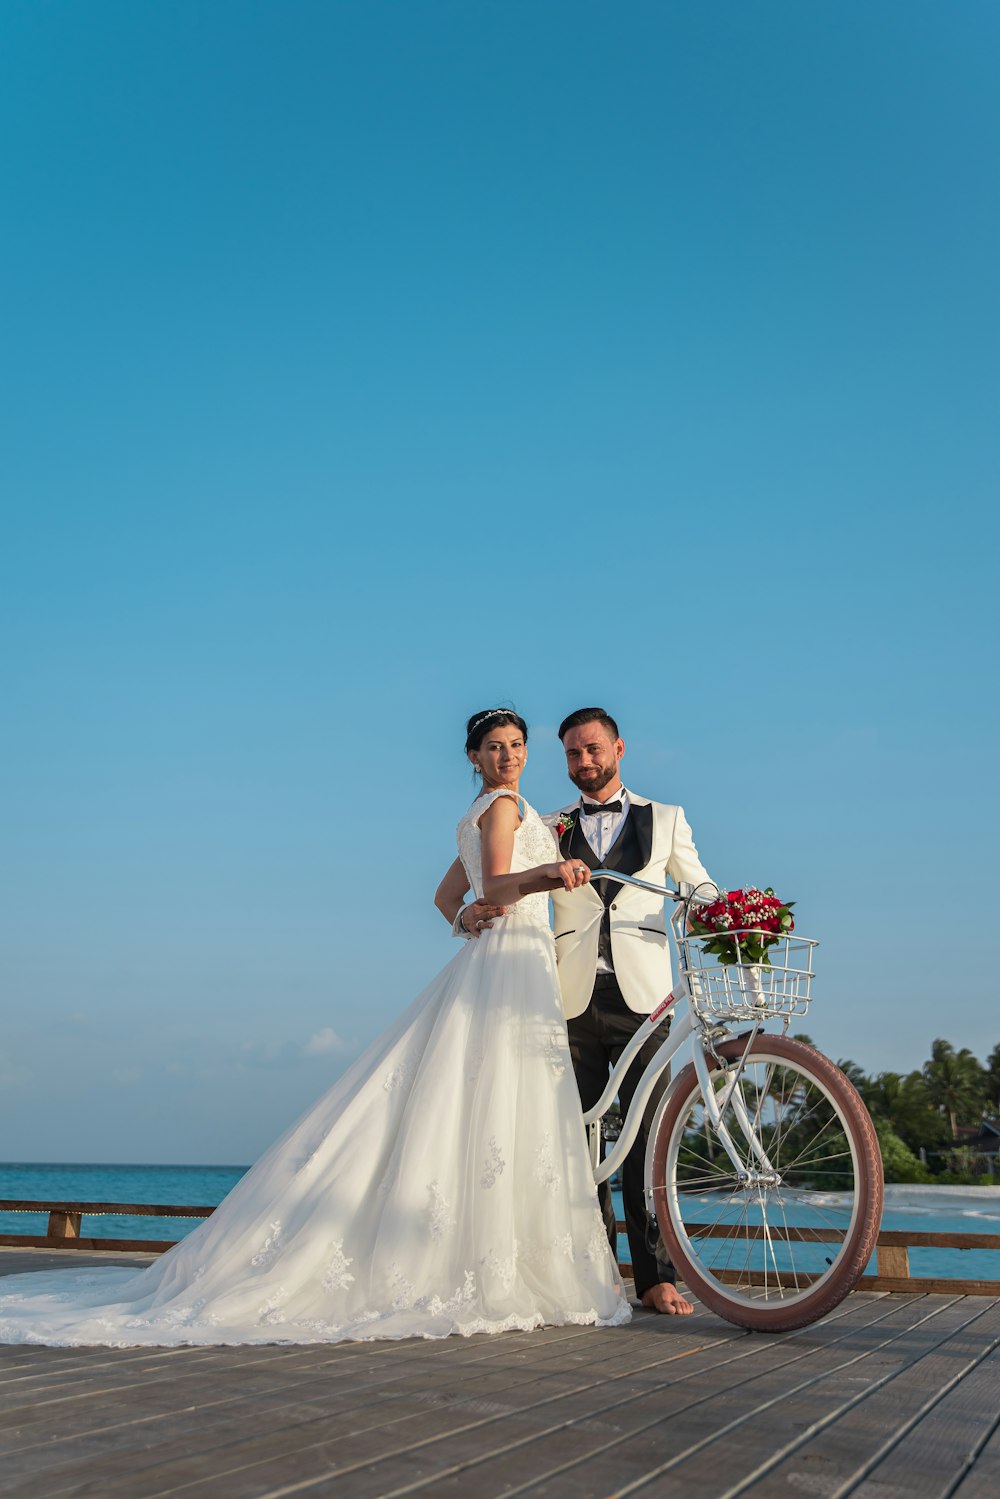 Mann und Frau im Brautkleid fahren tagsüber Fahrrad am Strand